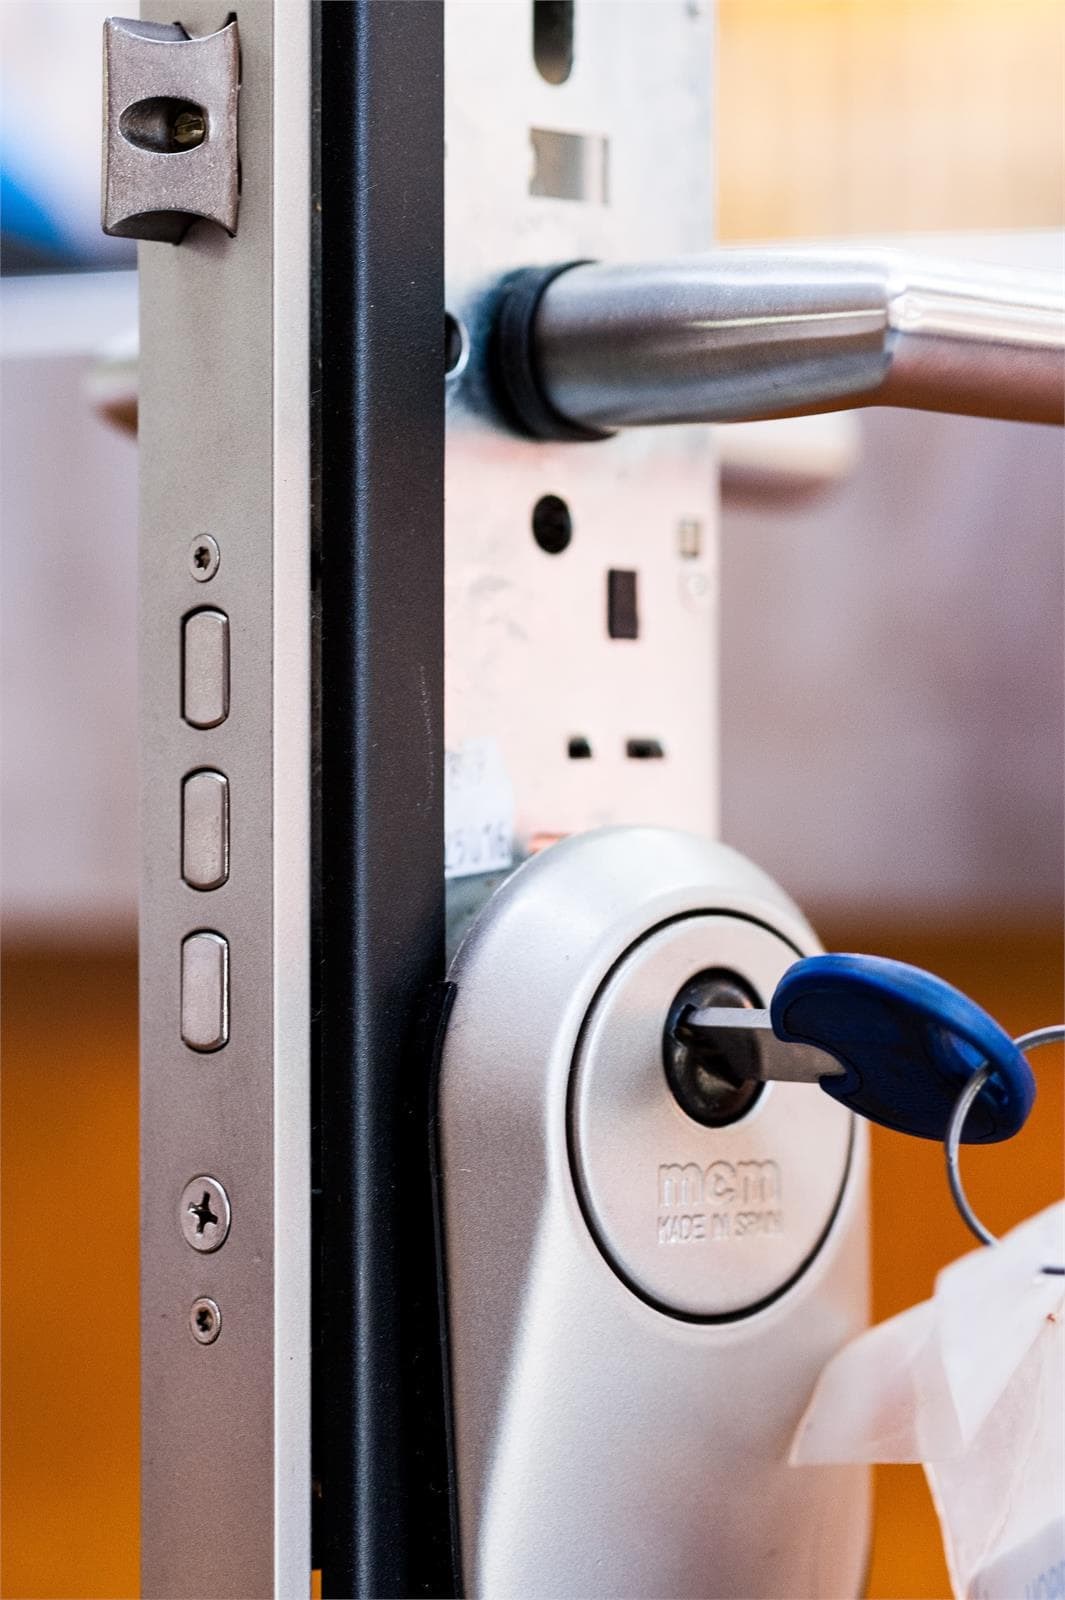 Instala cerraduras de seguridad en tu vivienda antes de tus vacaciones - Imagen 1